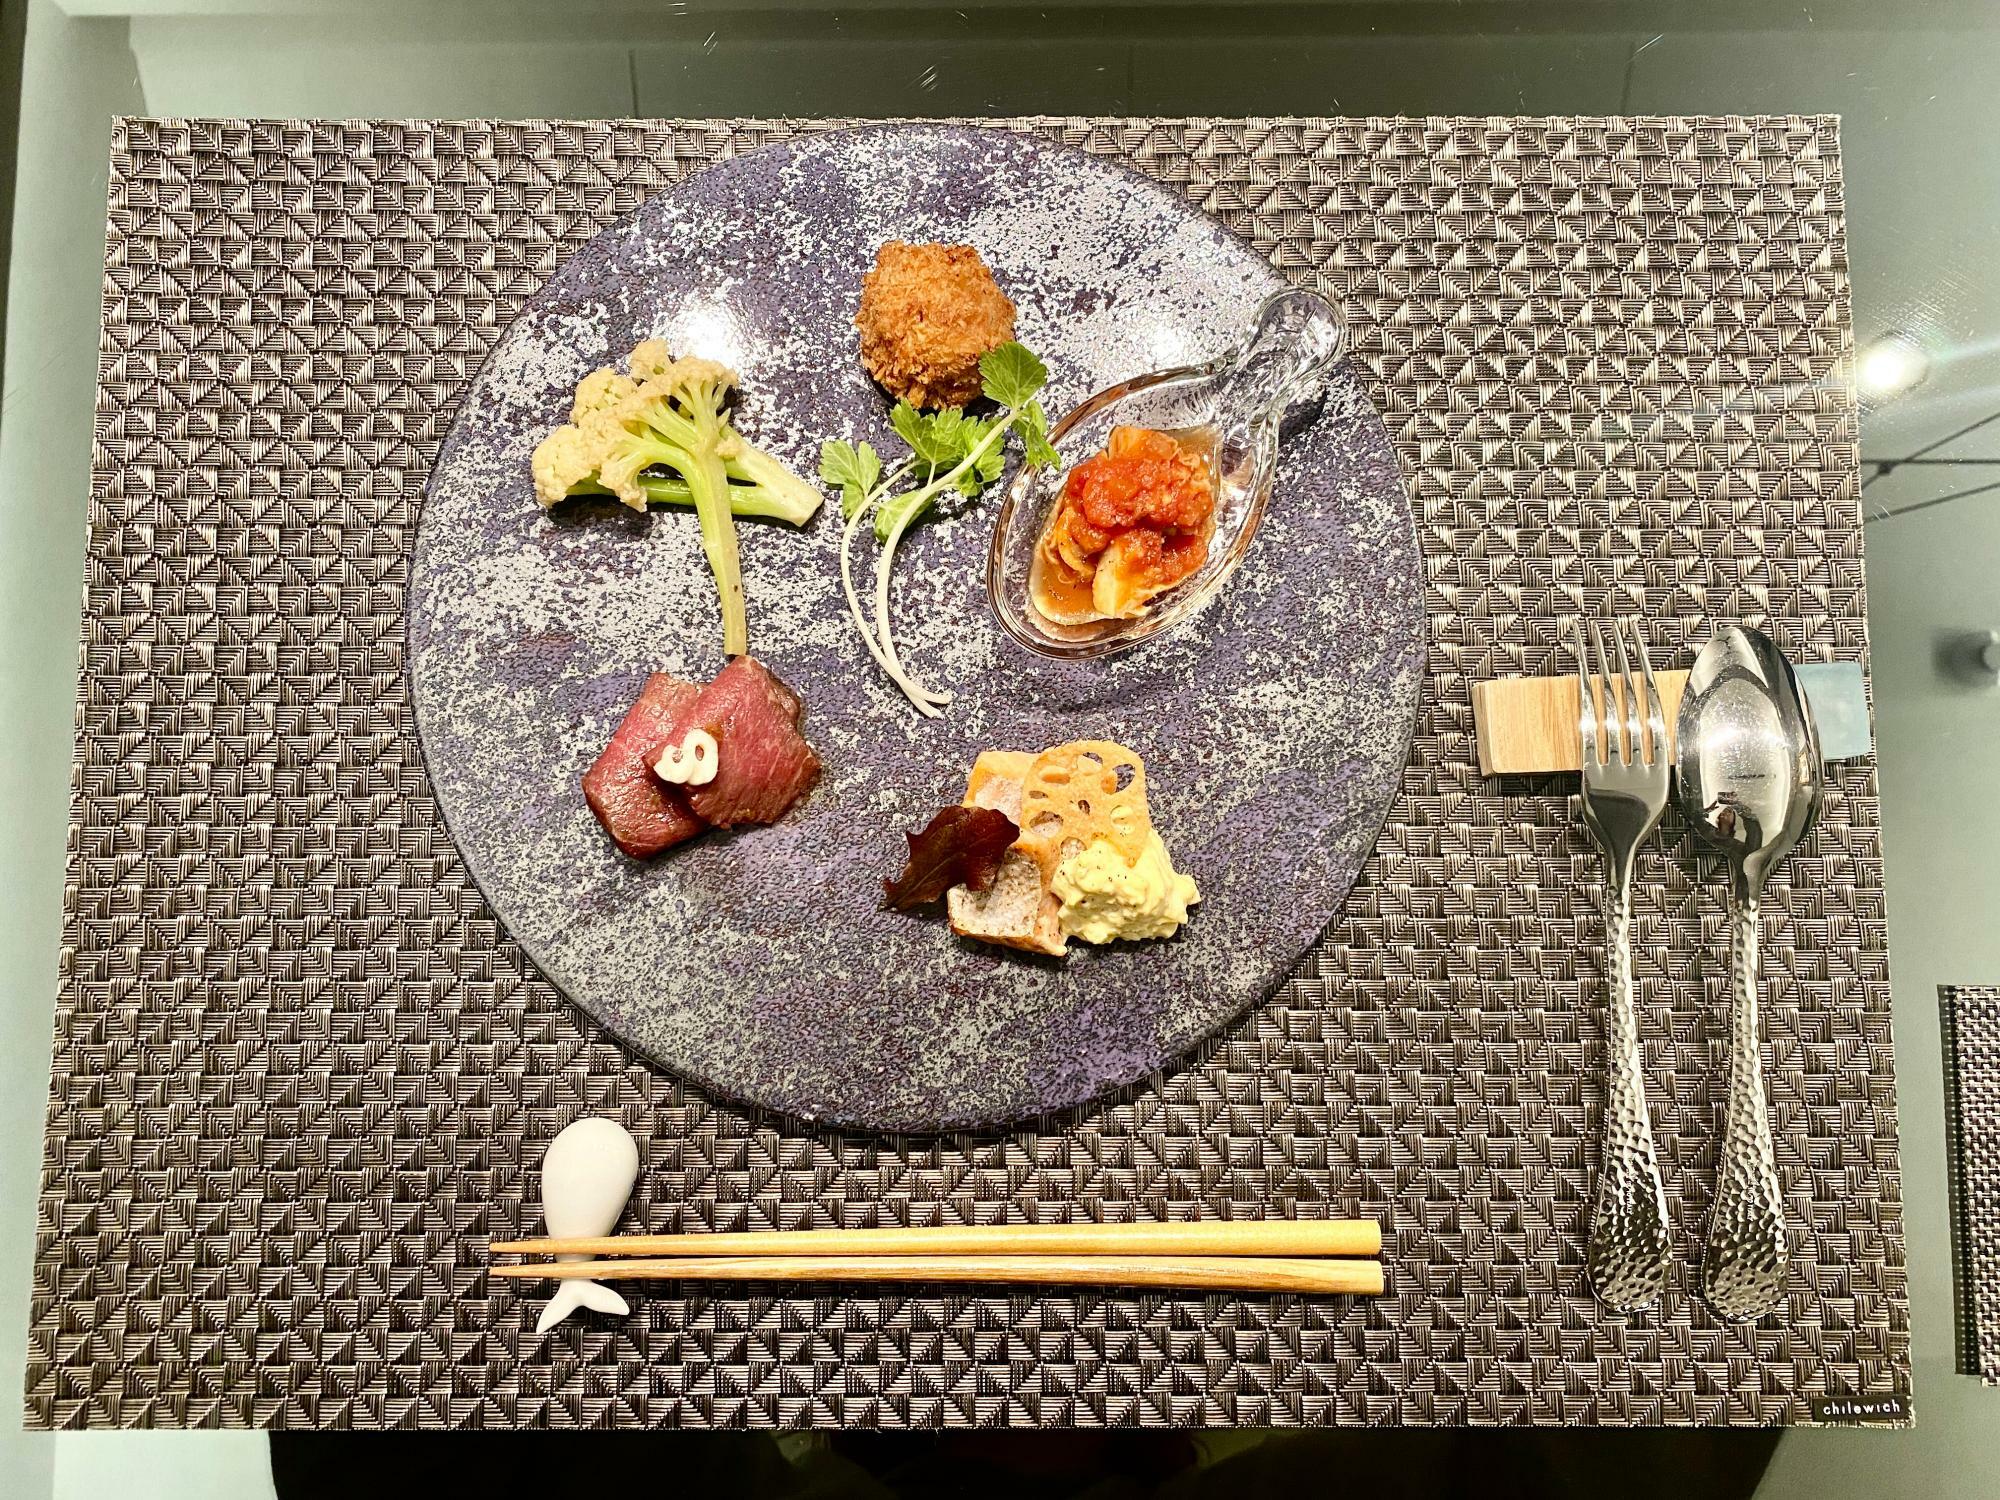 鎌倉野菜を使ったカルパッチョやクルミと生ハムのパスタなど、見た目も美し料理。